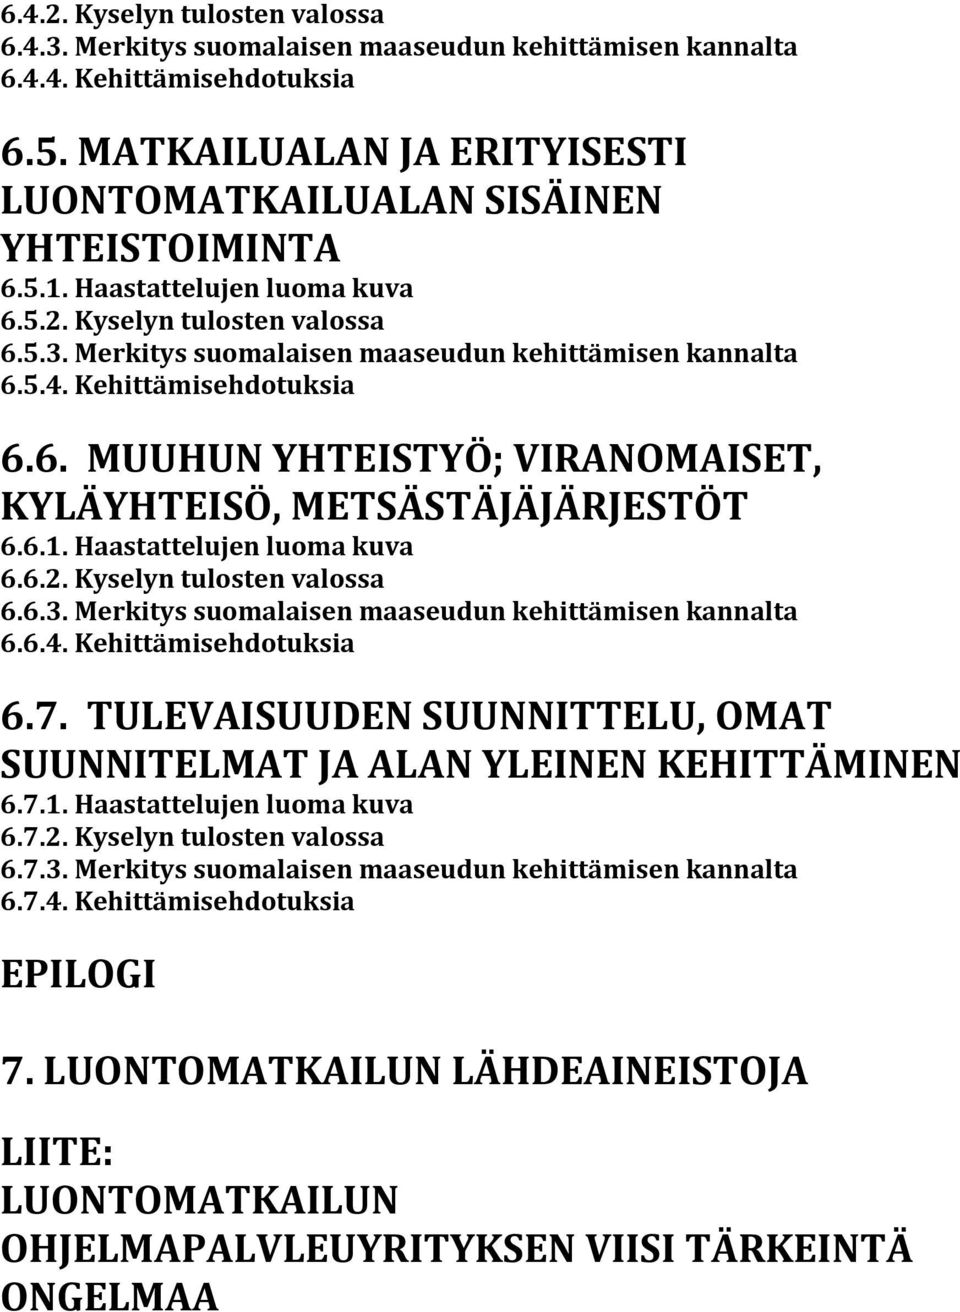 6.1. Haastattelujen luoma kuva 6.6.2. Kyselyn tulosten valossa 6.6.3. Merkitys suomalaisen maaseudun kehittämisen kannalta 6.6.4. Kehittämisehdotuksia 6.7.